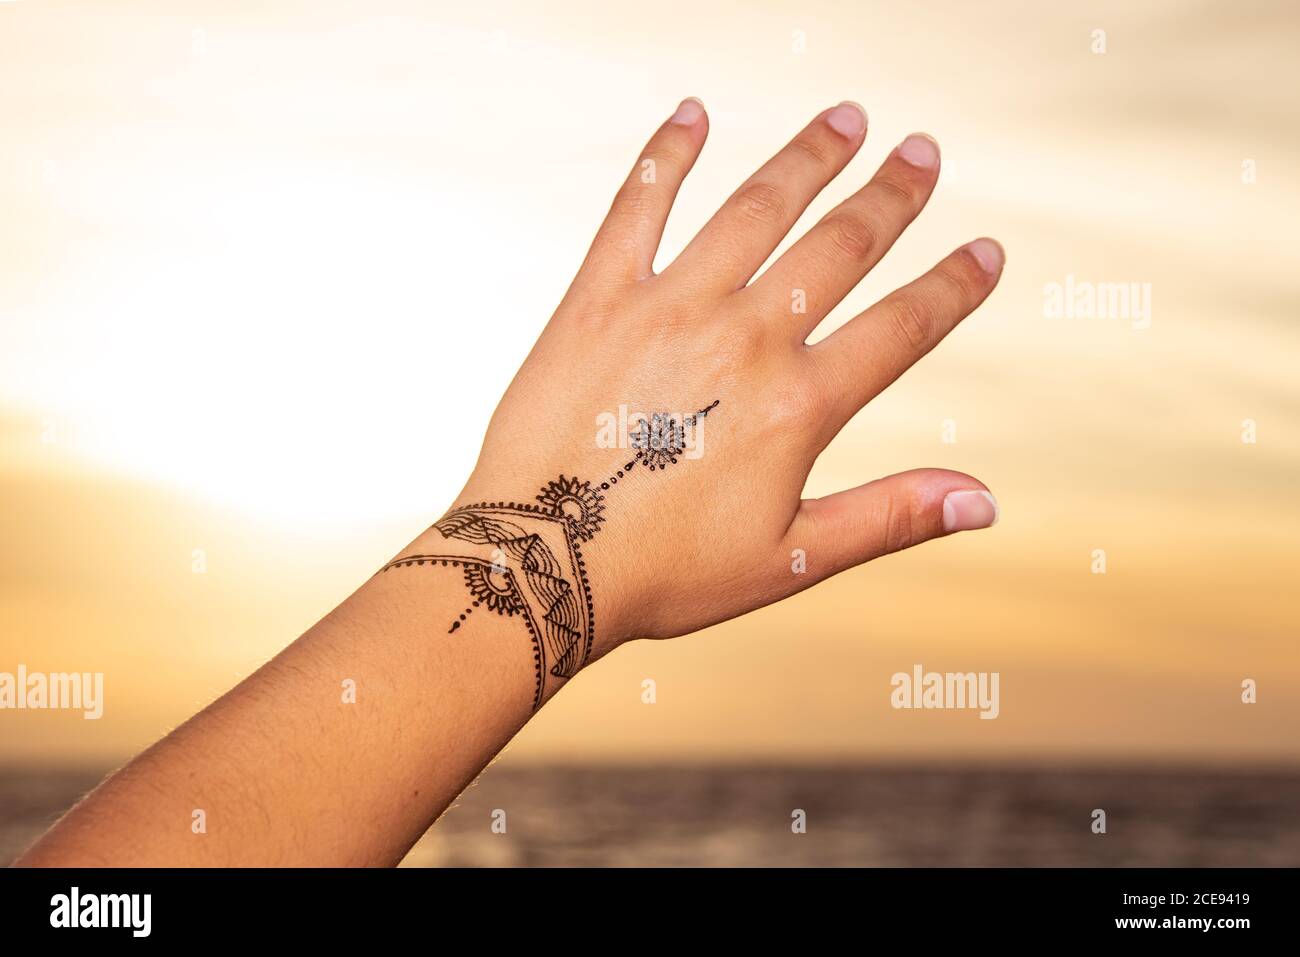 Henne tattoo immagini e fotografie stock ad alta risoluzione - Alamy